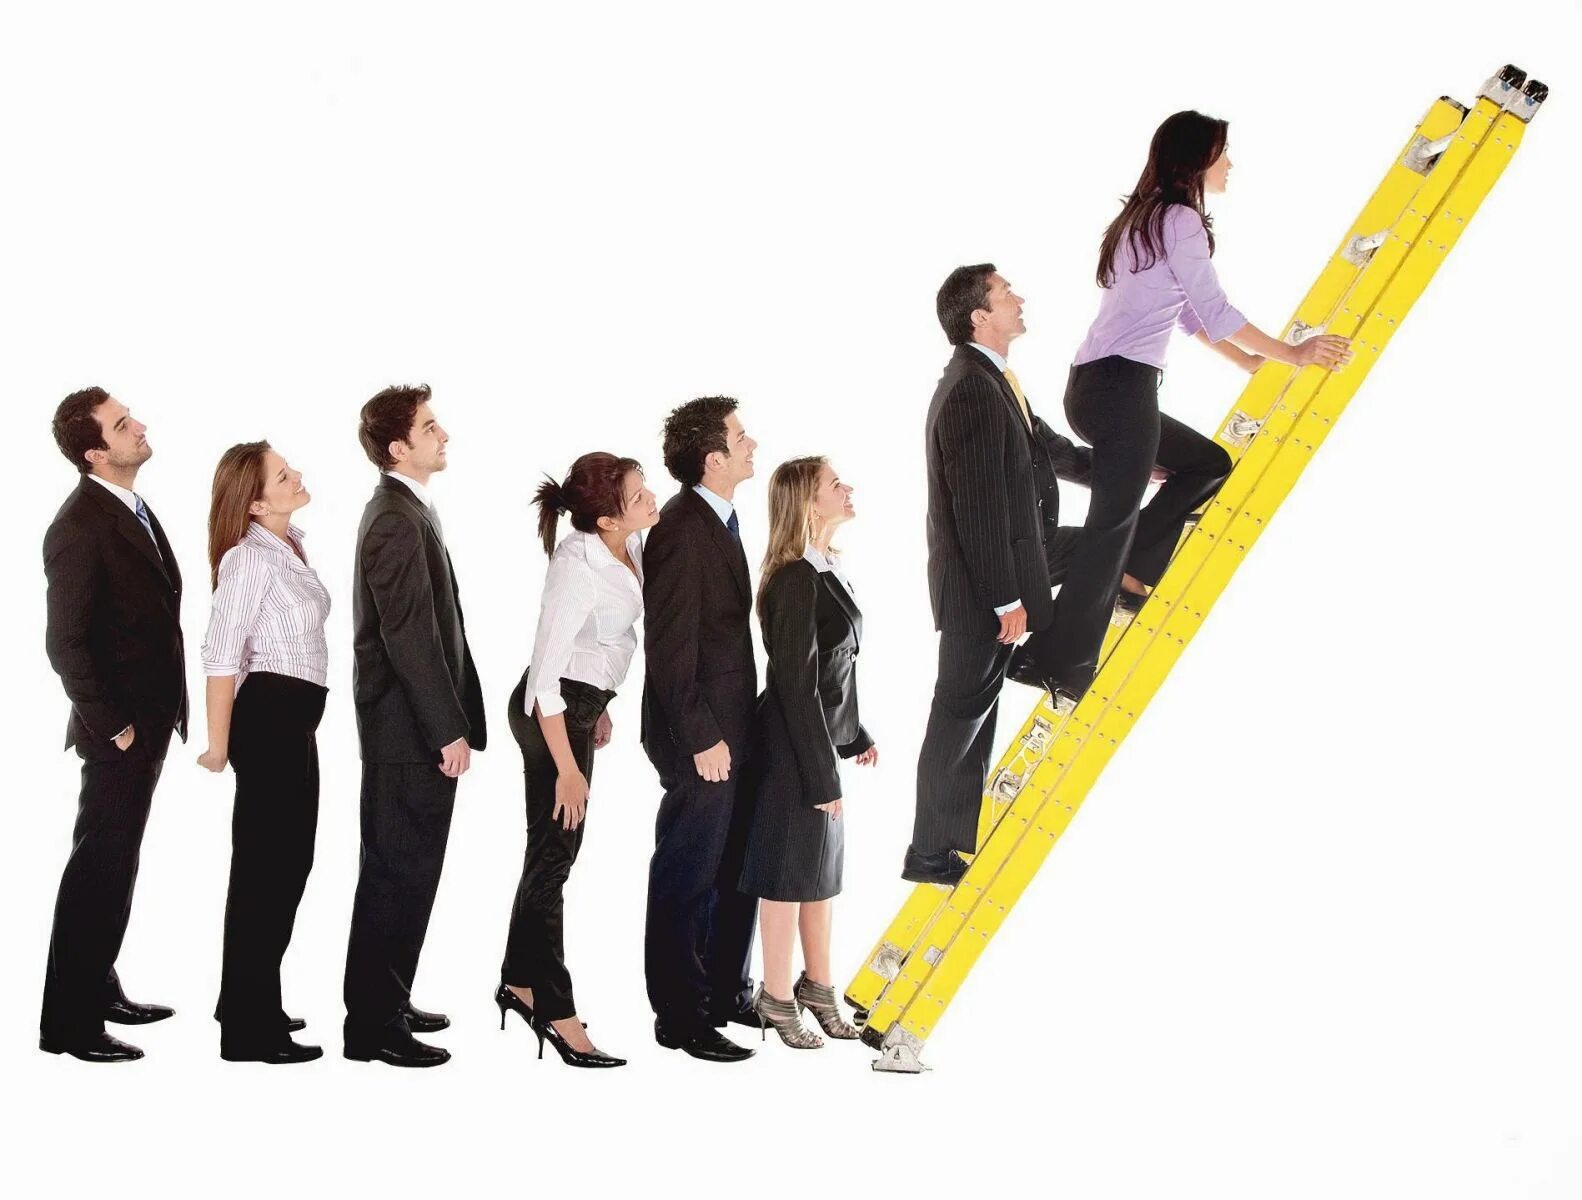 Развитие картинки. Карьерный рост. Карьерная лестница. Профессиональный рост сотрудников. Продвижение по карьерной лестнице.